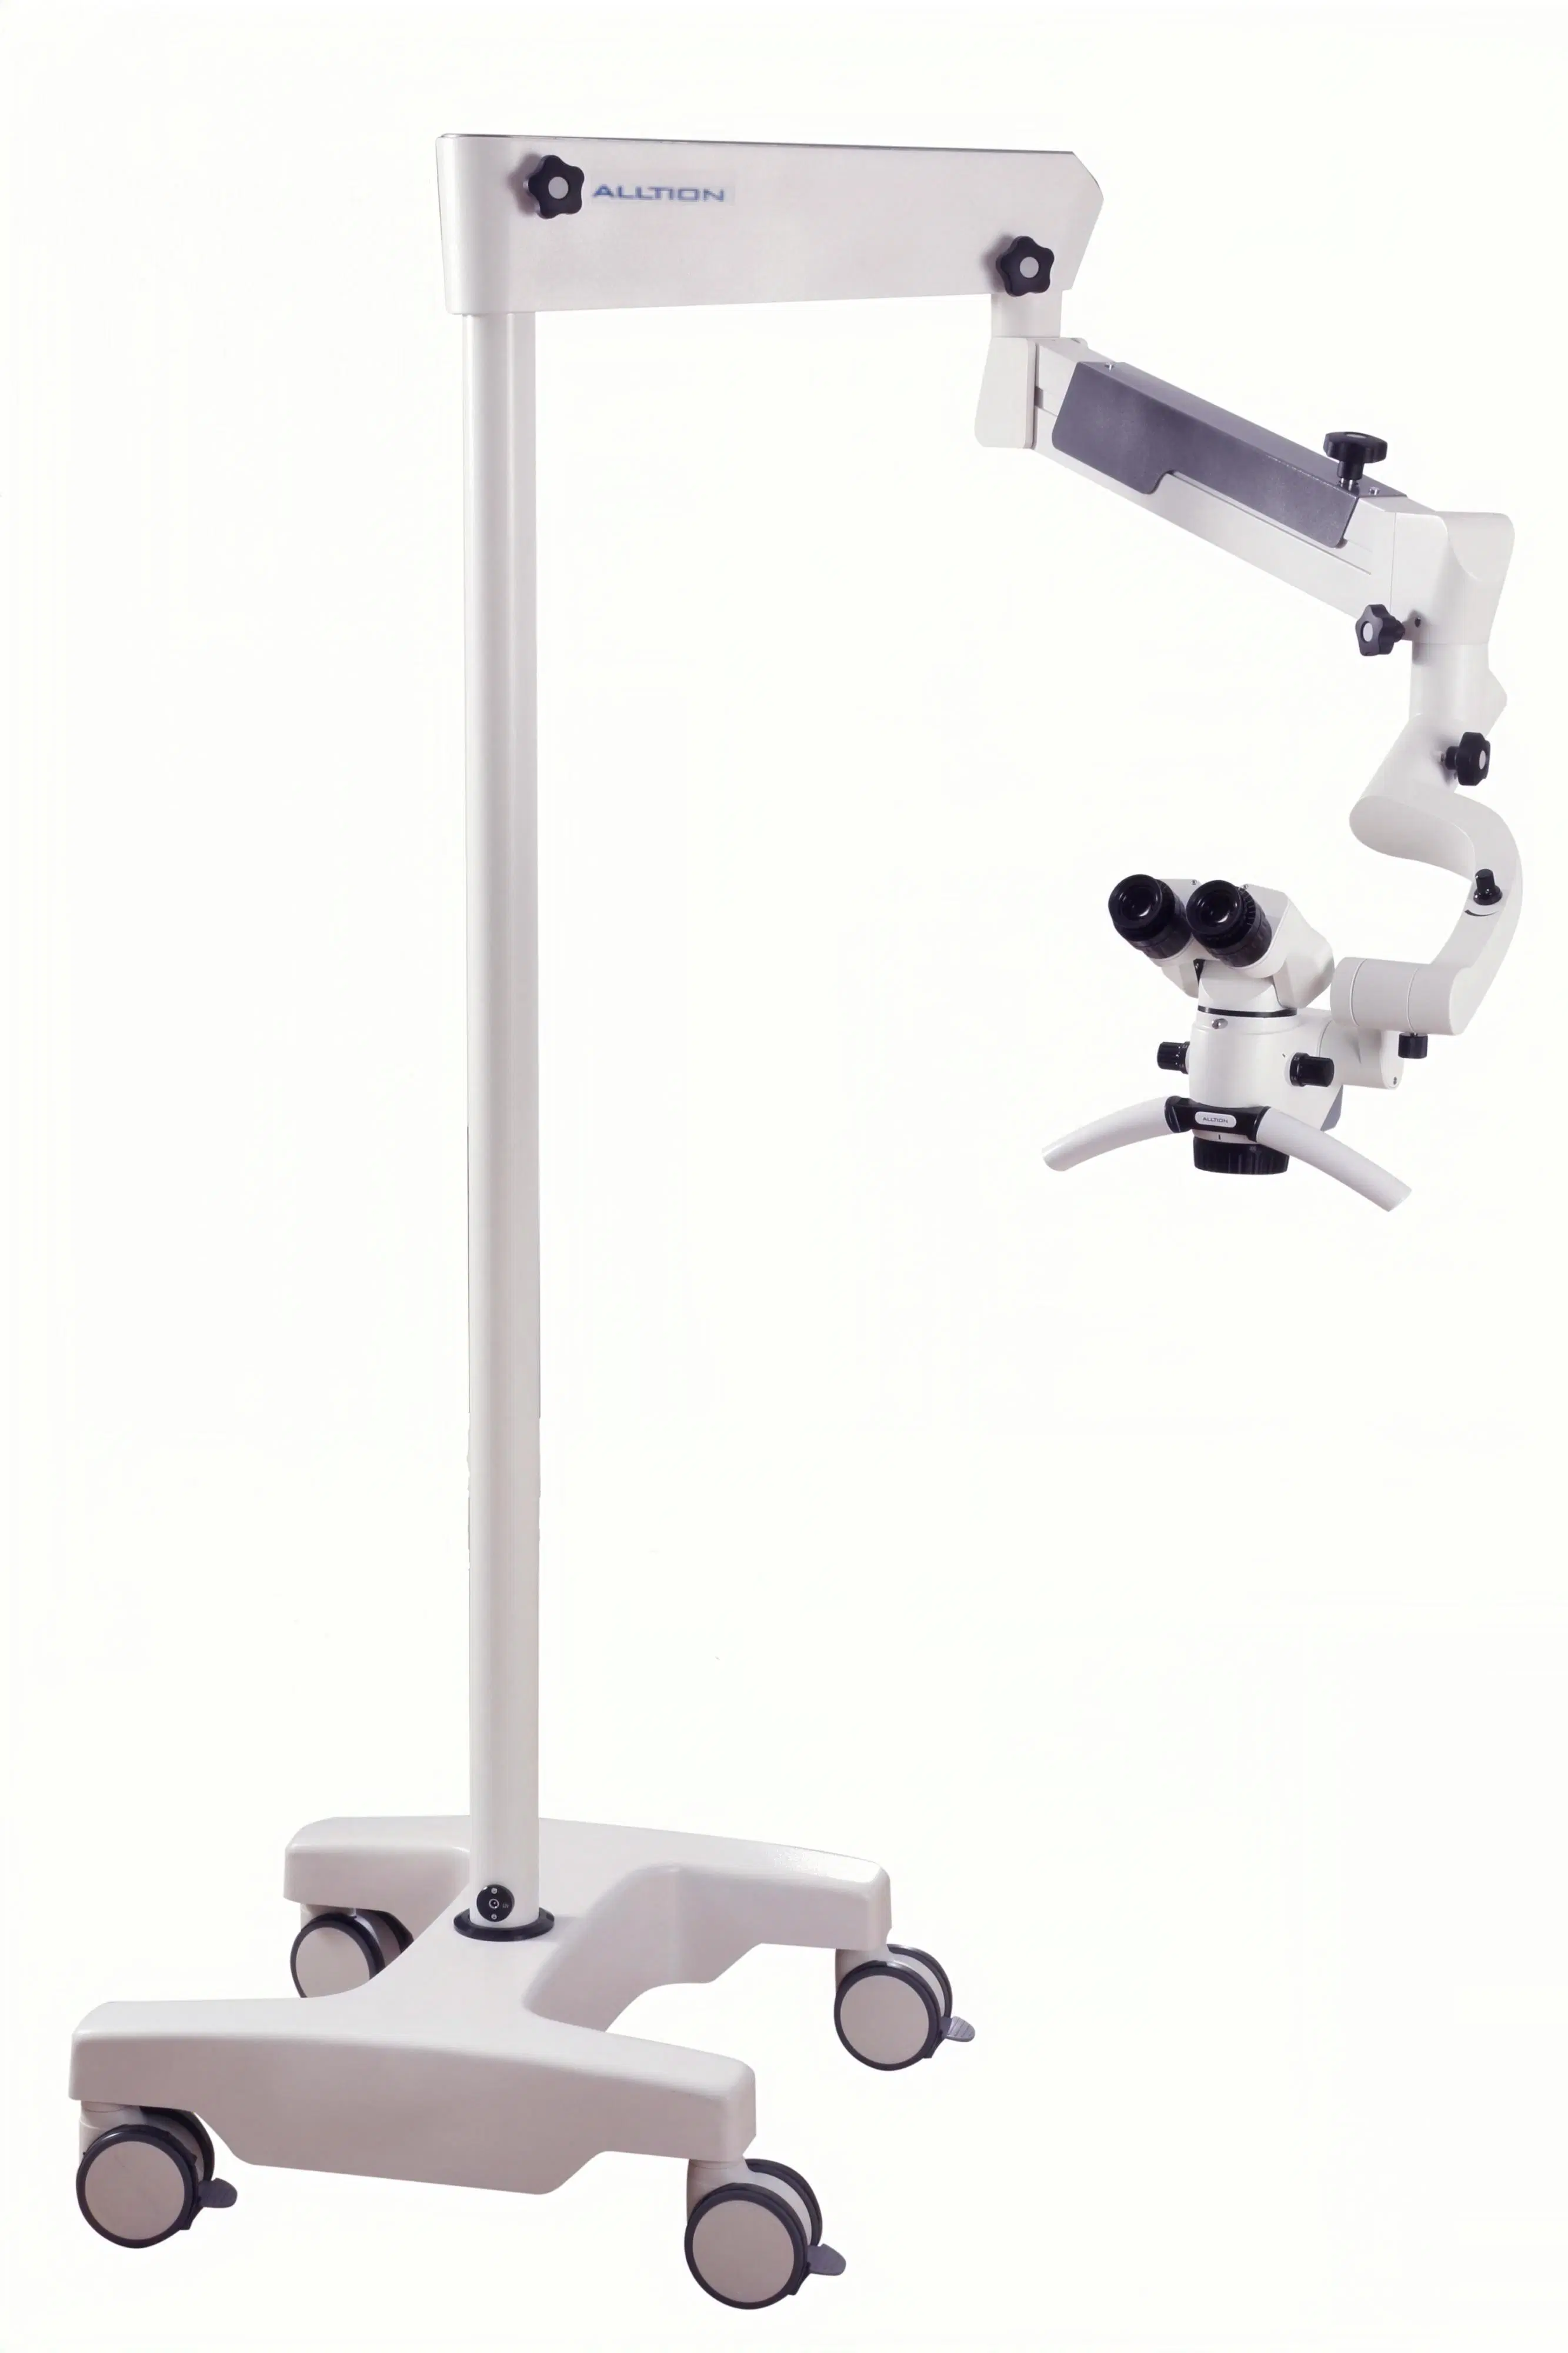 Am-2000 Микроскоп для хирургической операции операции в Ent Стоматологическая Ортопедия хирургия руки Andrology нейрохирургии и урология P &amp; R ветеринарных